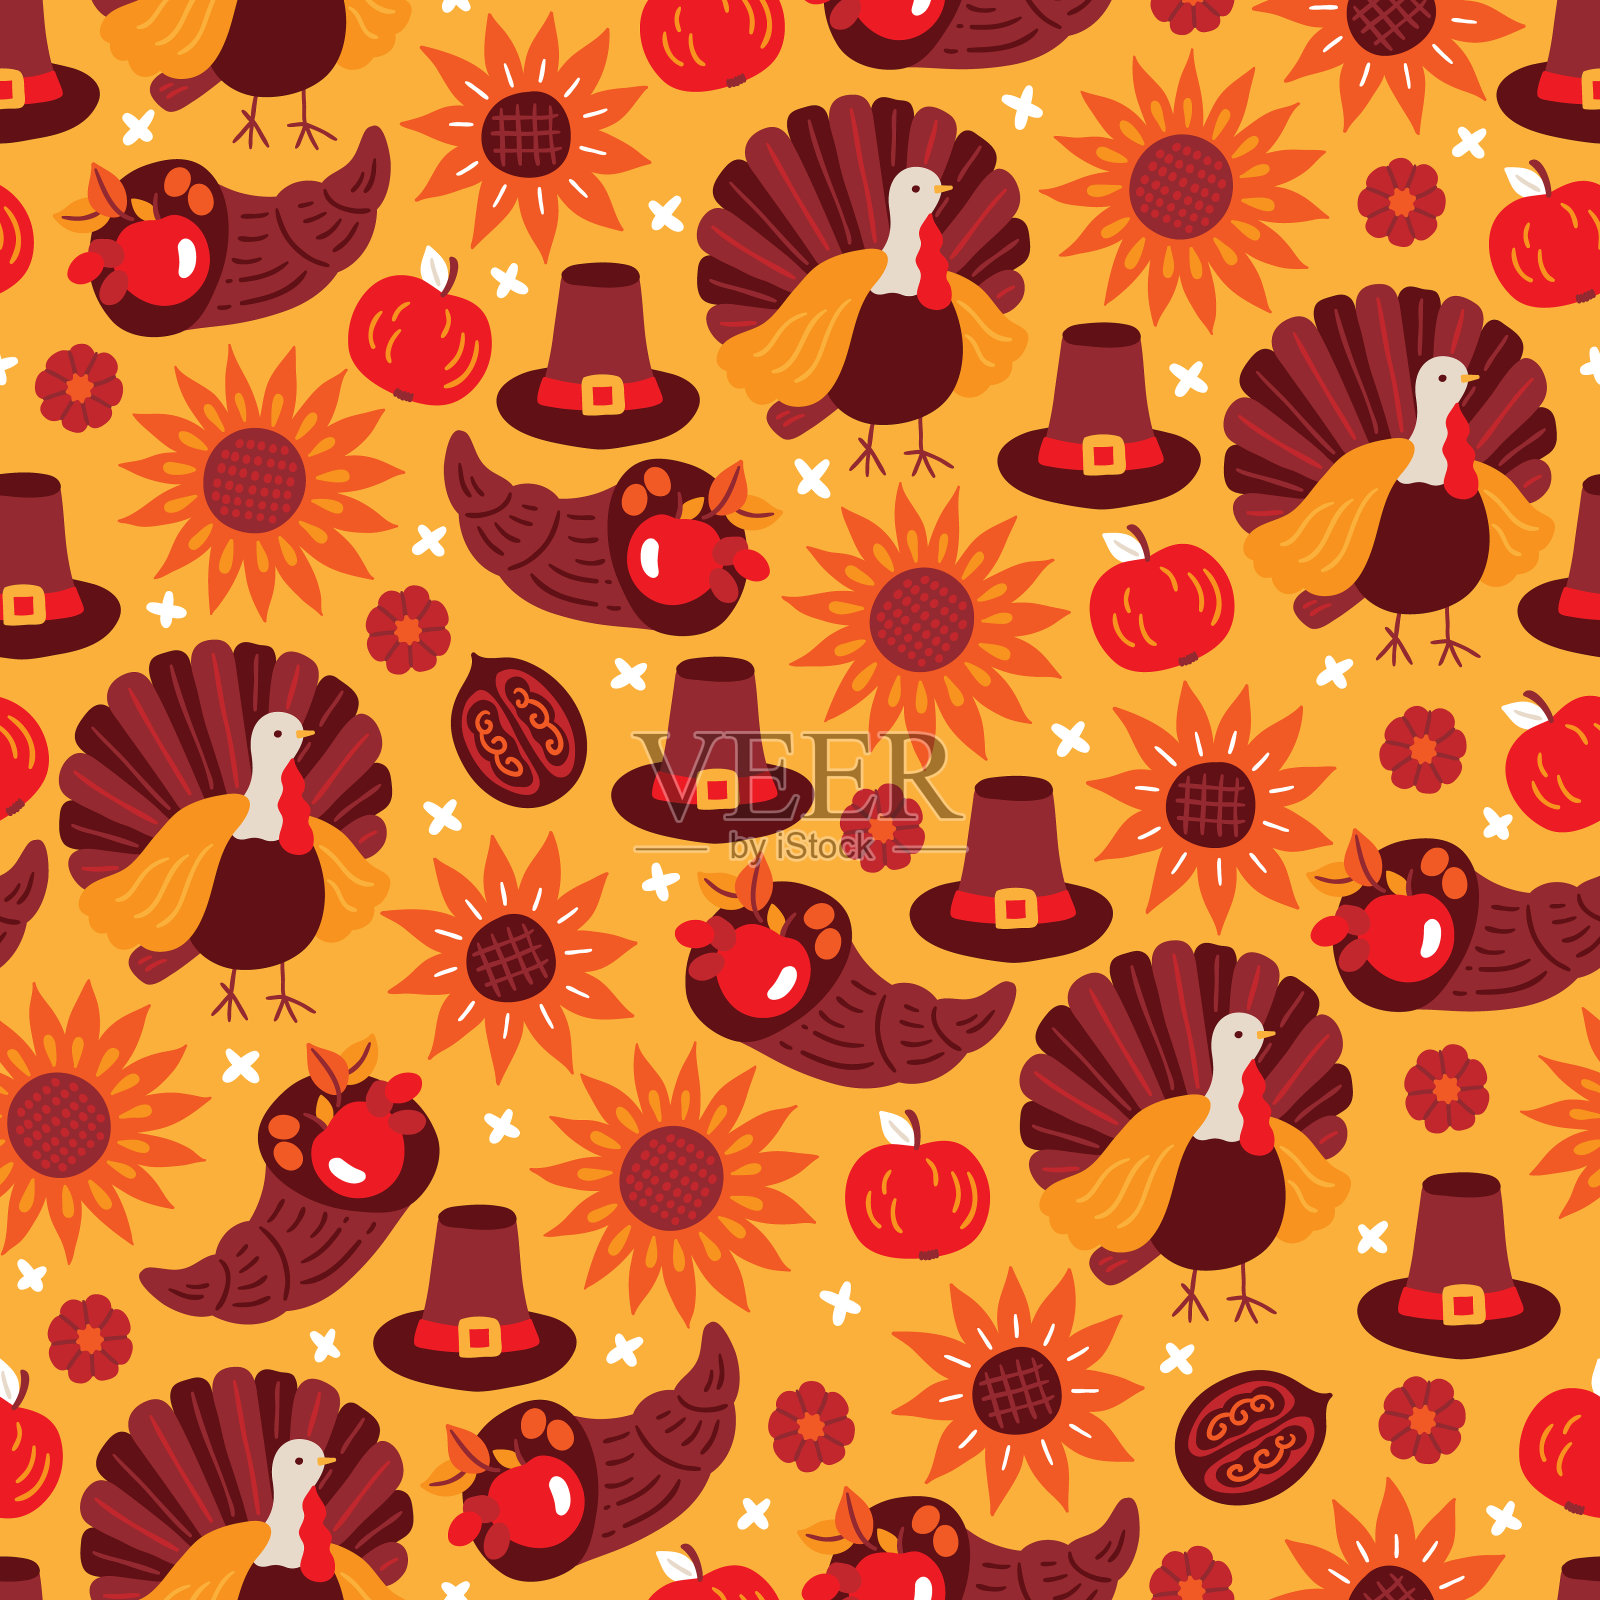 感恩节无缝图案有向日葵、火鸡、苹果、南瓜、帽子背景图片素材